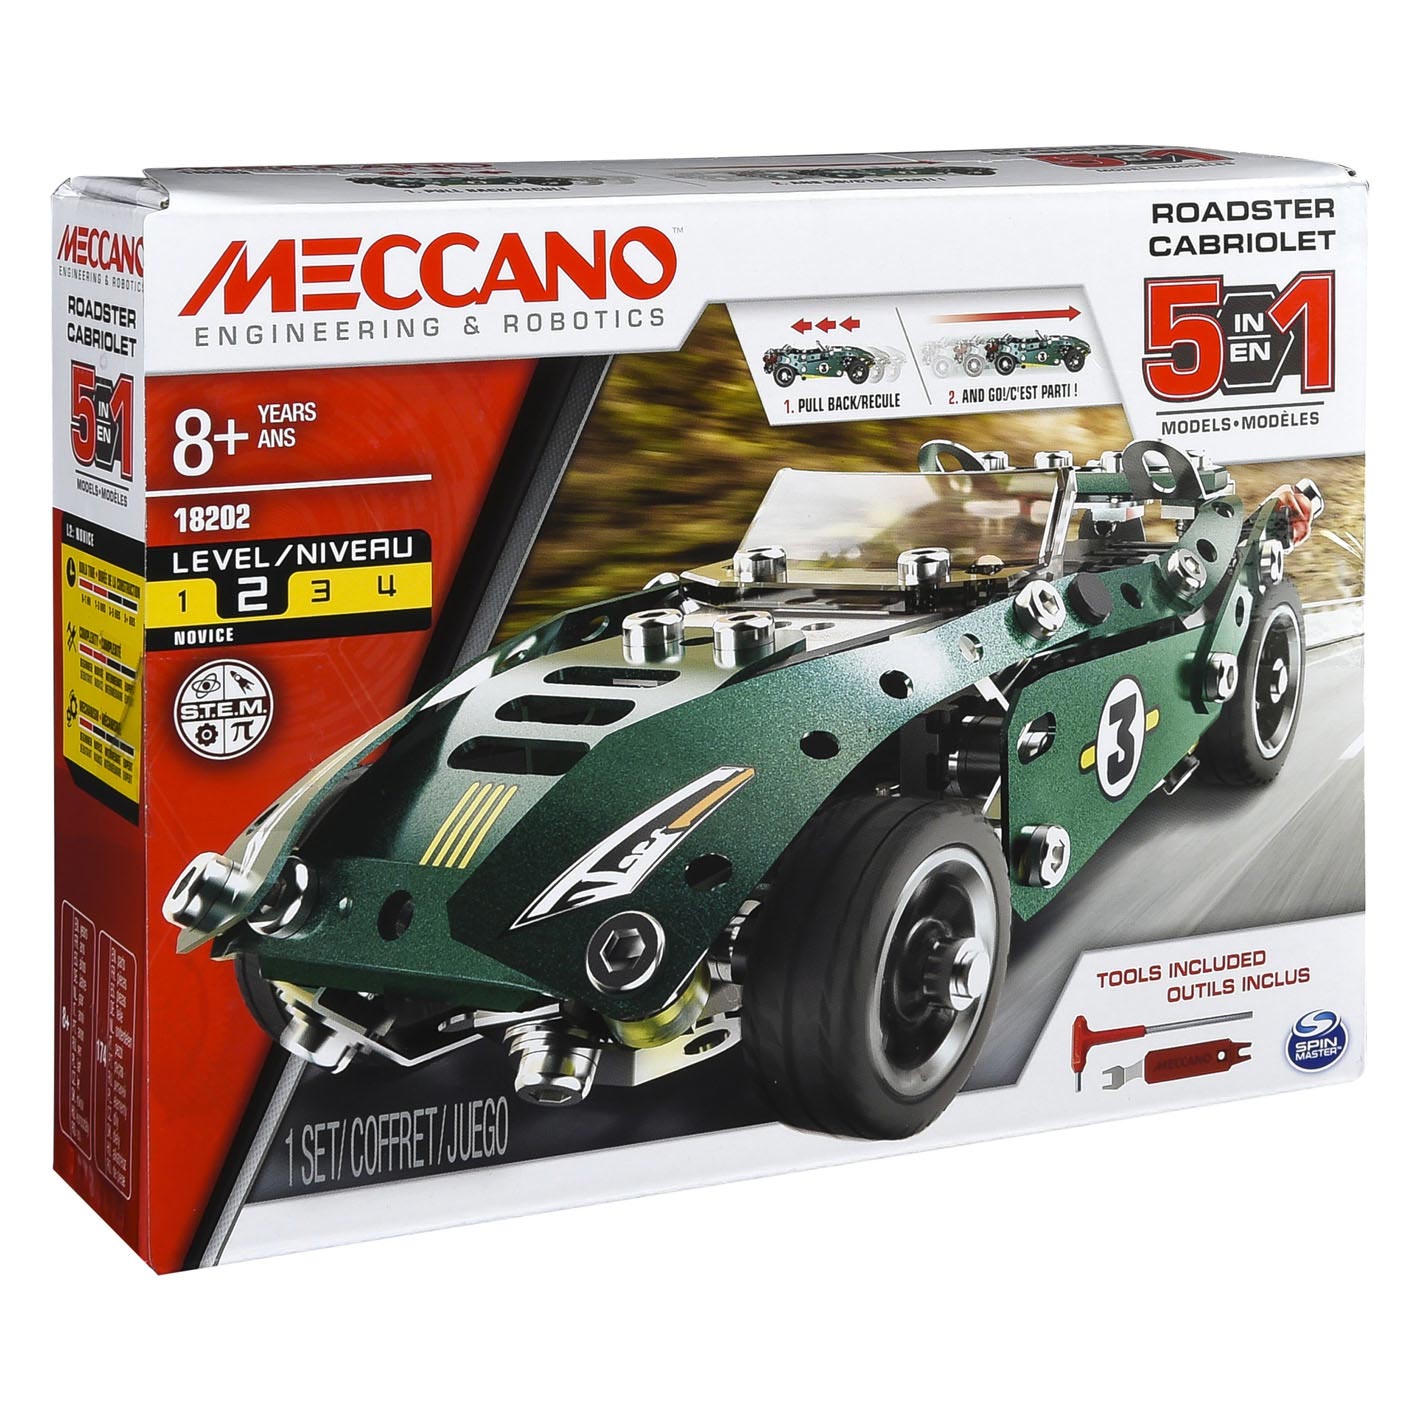 Meccano – Pull back , 5in1 STEM-Kit